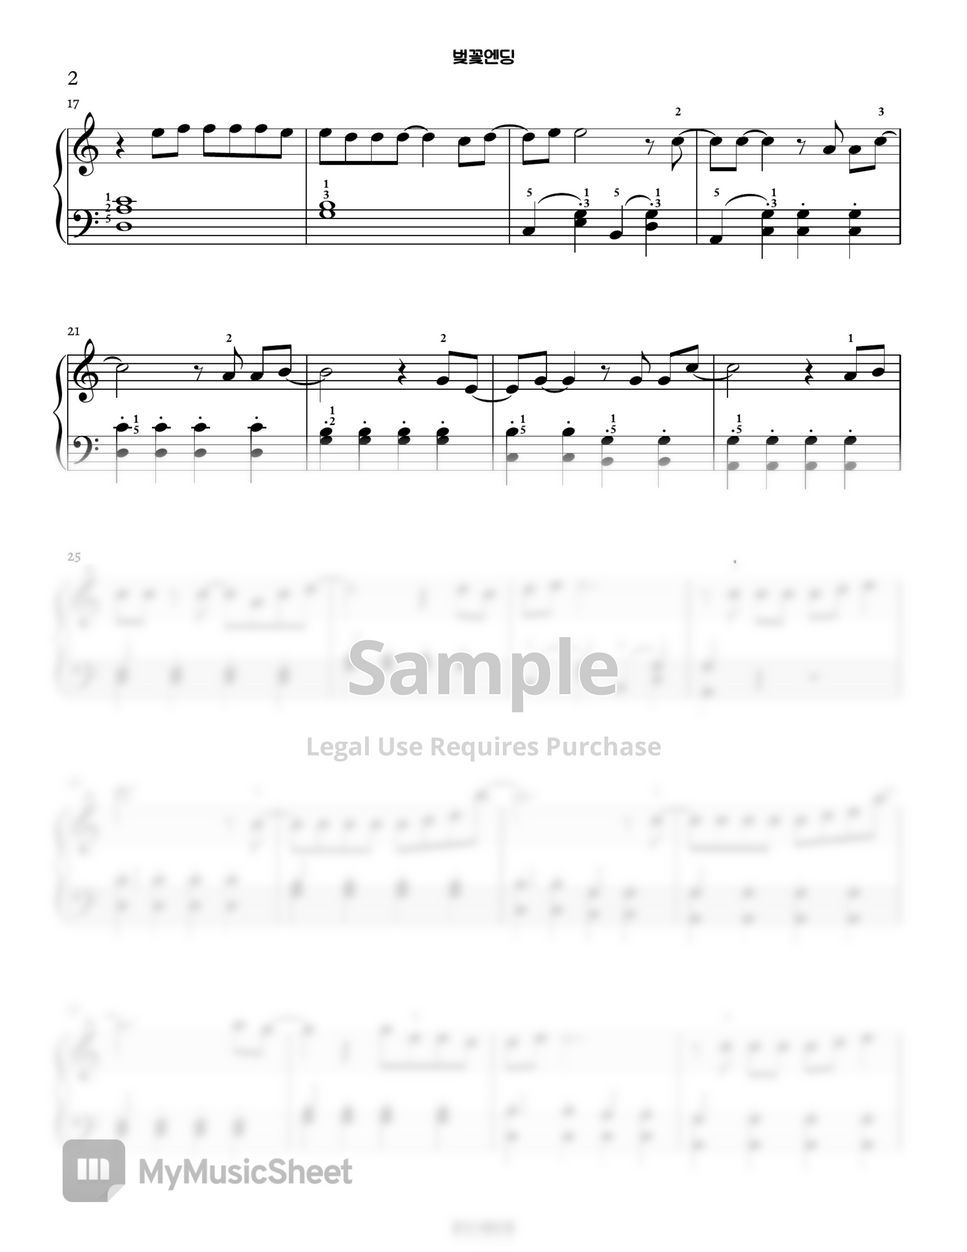 장범준 - 벚꽃엔딩 Piano Arrangement in C major (버스커버스커) by PianoSSam